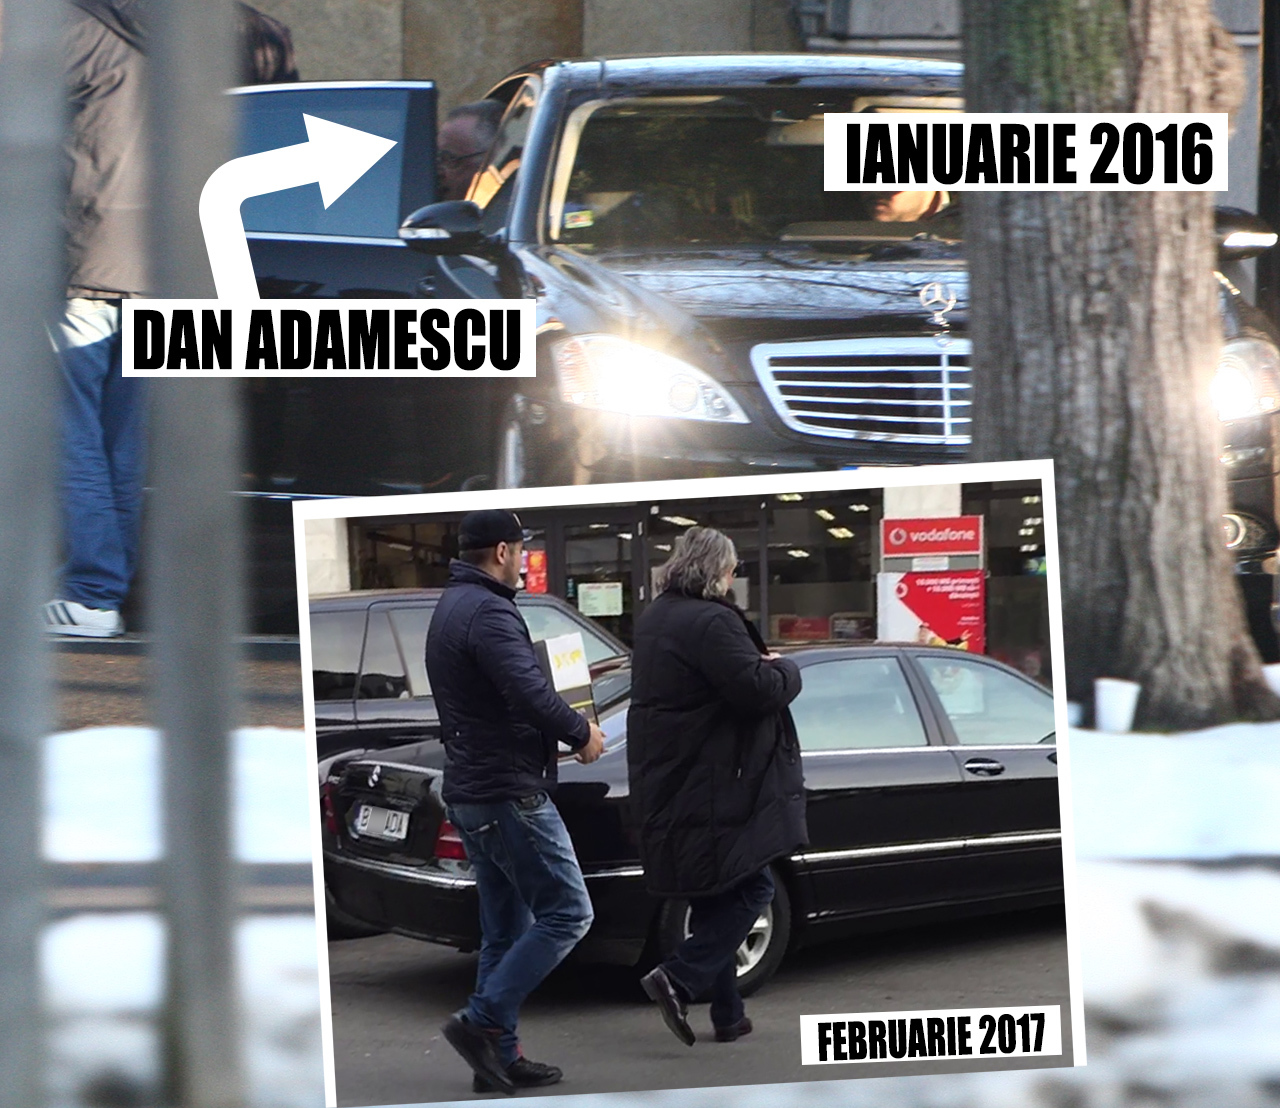 În urmă c-un an de zile, Dan Adamescu folosea aceeaşi maşină